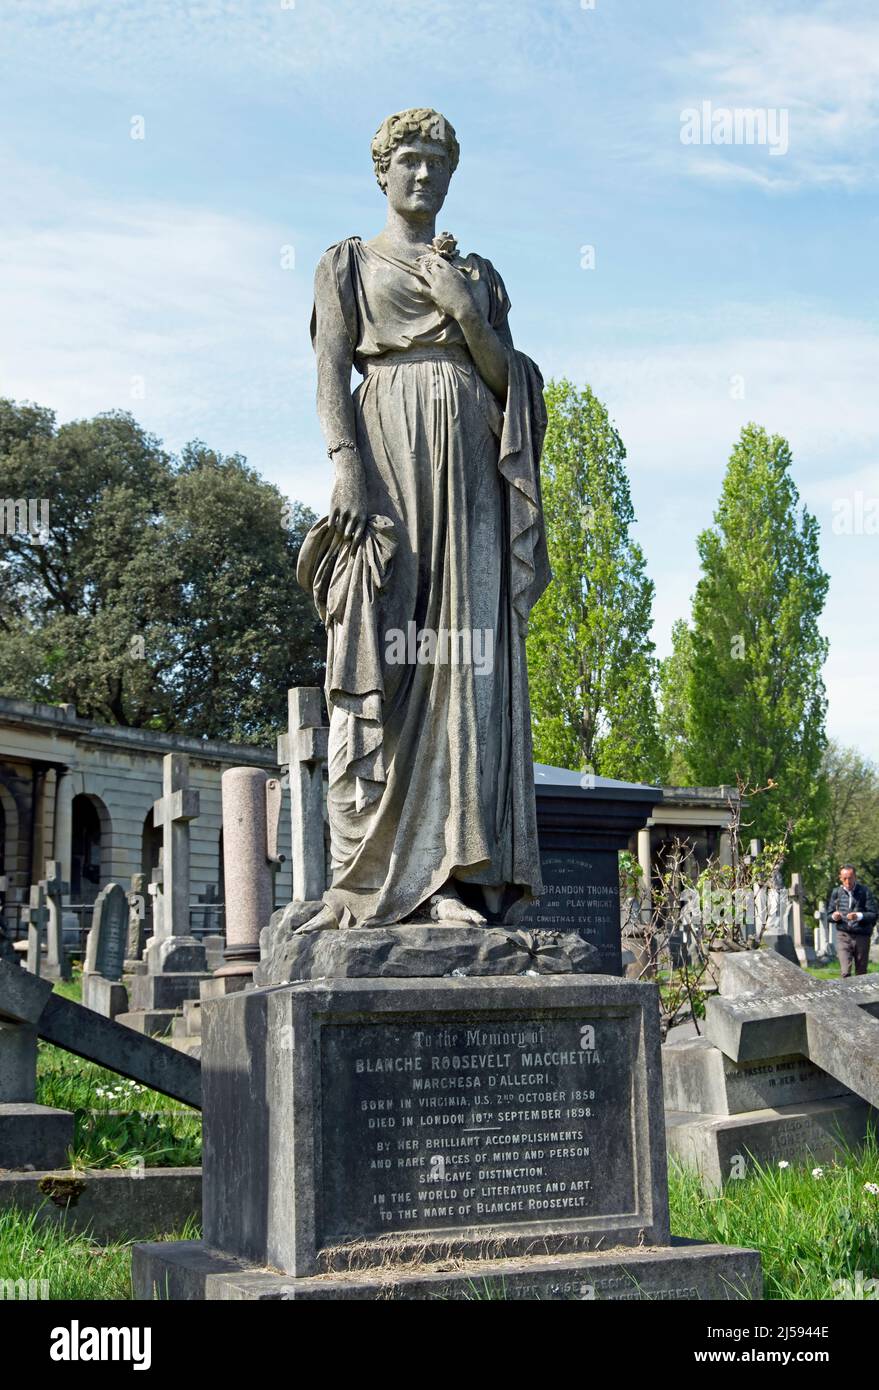 il monumento in marmo italiano del 1898 che segna la tomba del cantante lirico, la macchetta blanche roosevelt, il cimitero di brompton, londra, inghilterra Foto Stock